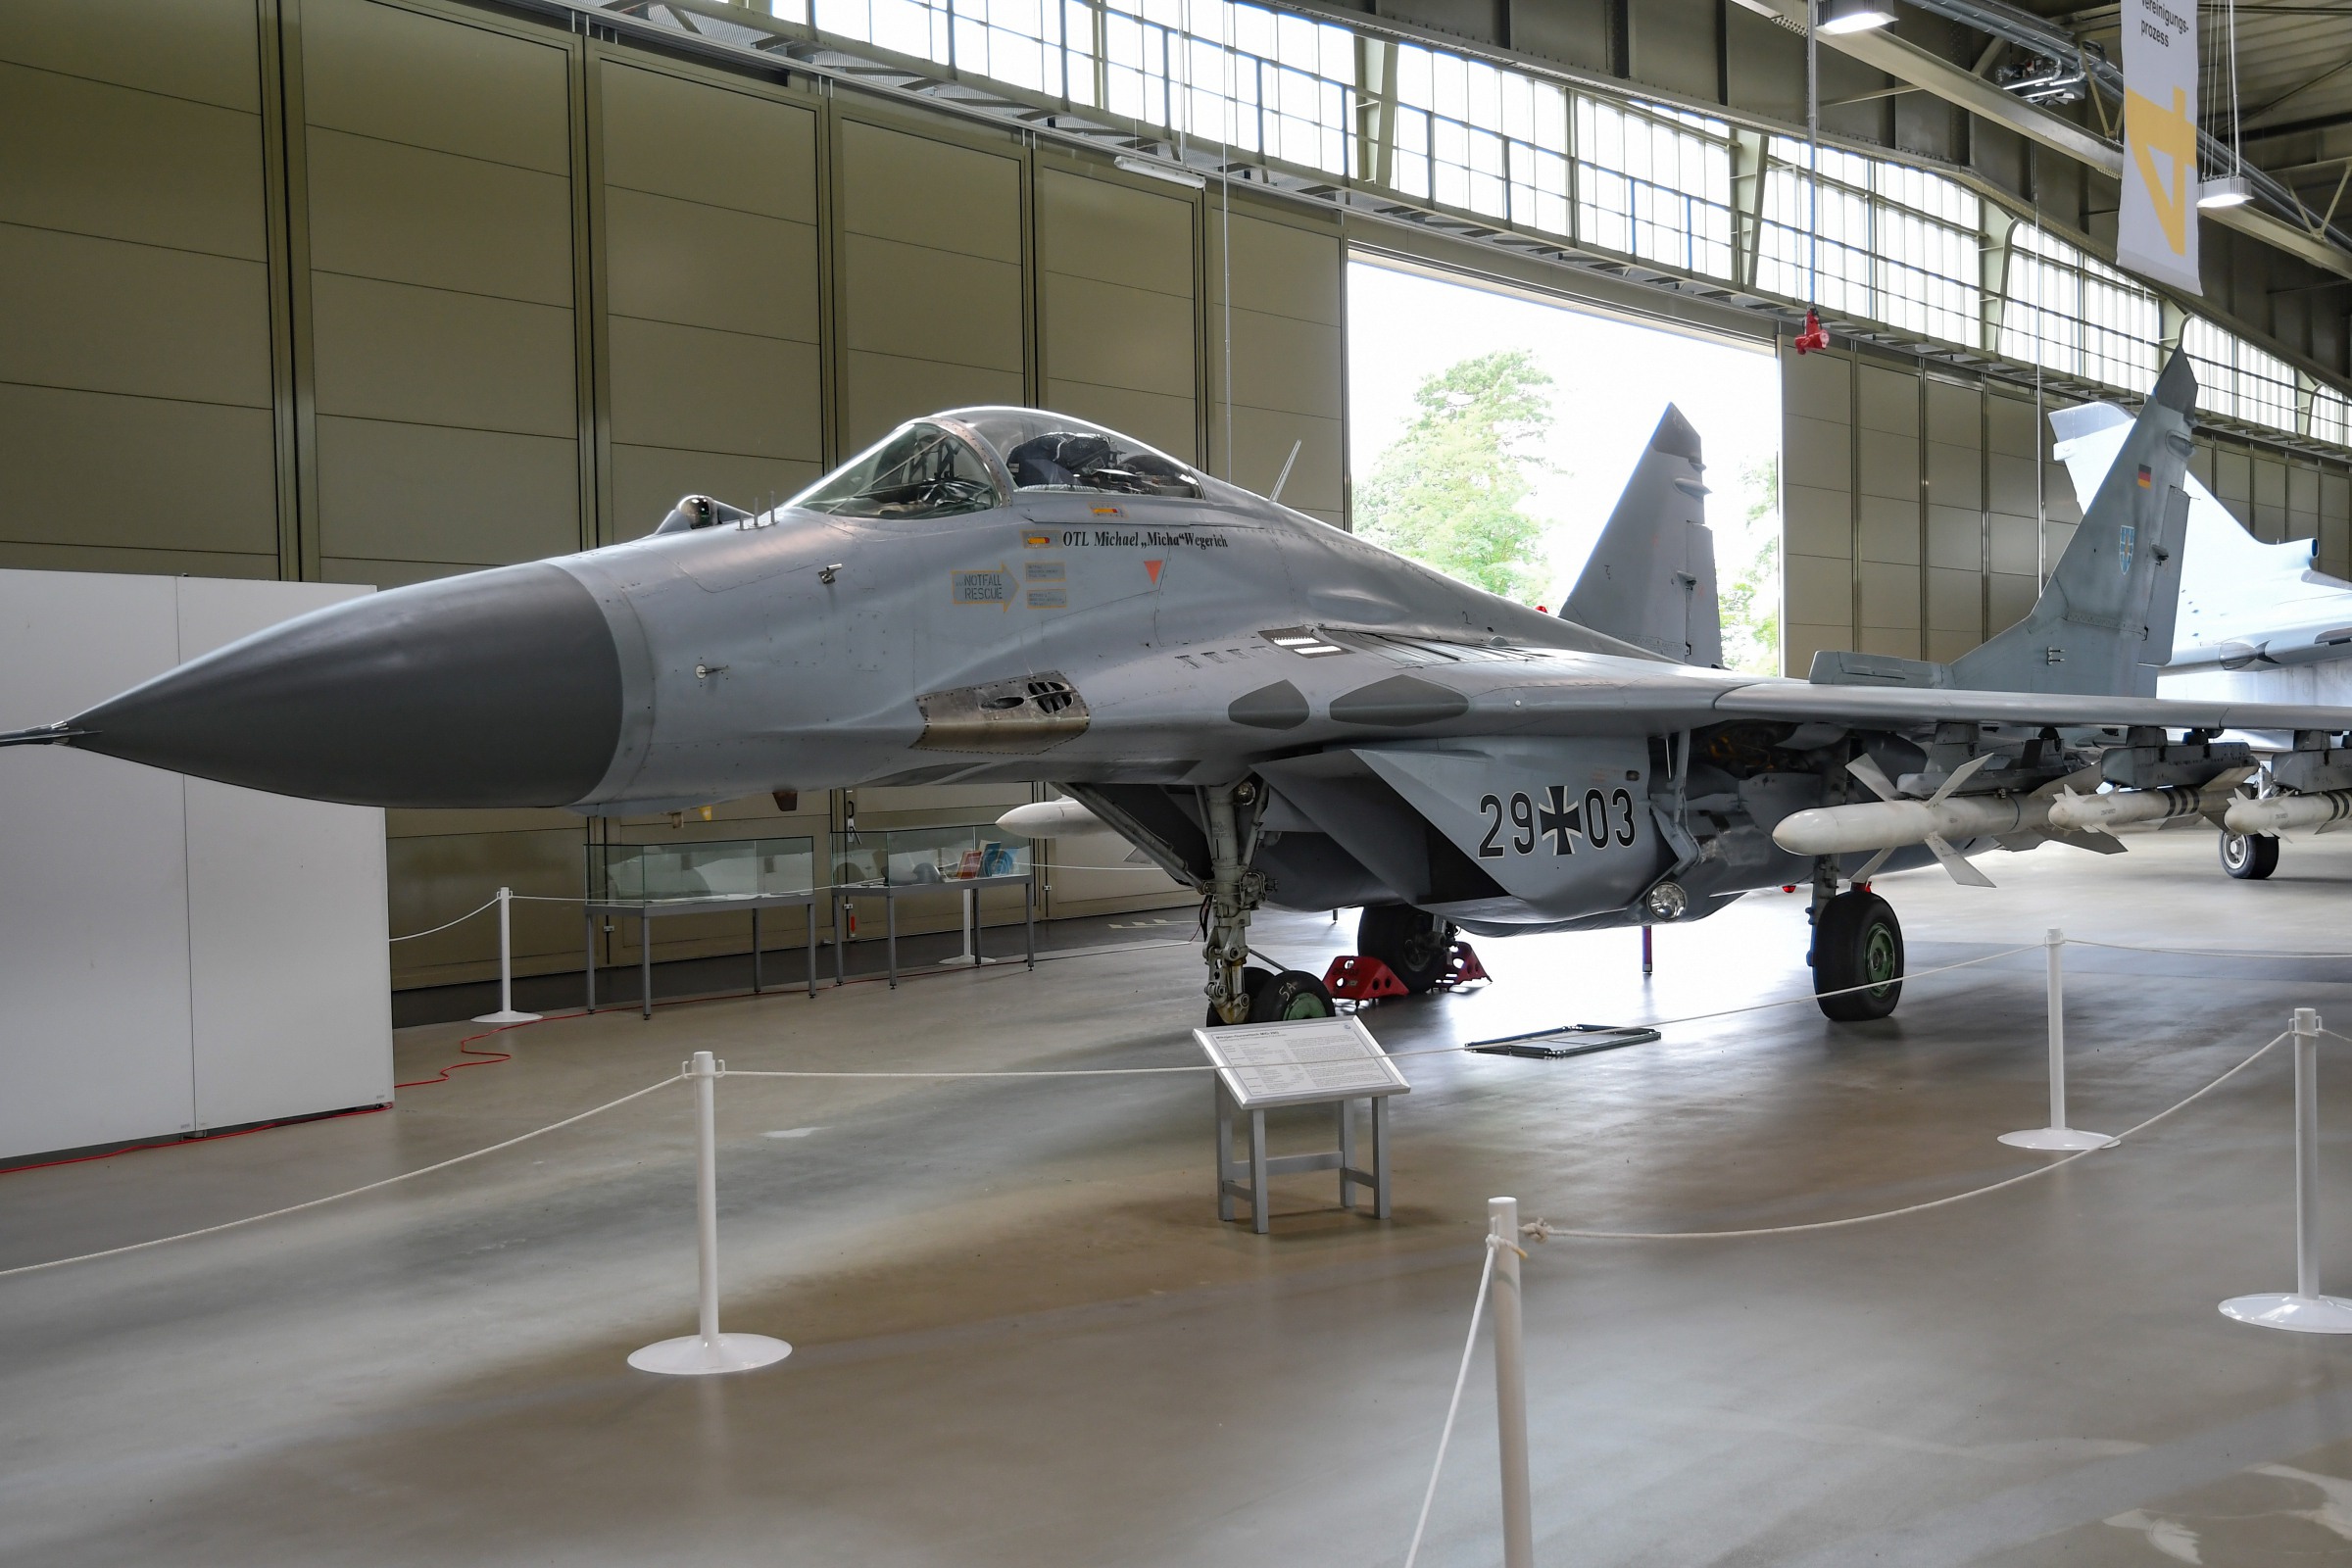 Mikoyan-Gurevich  MiG-29G  (Fulcrum)